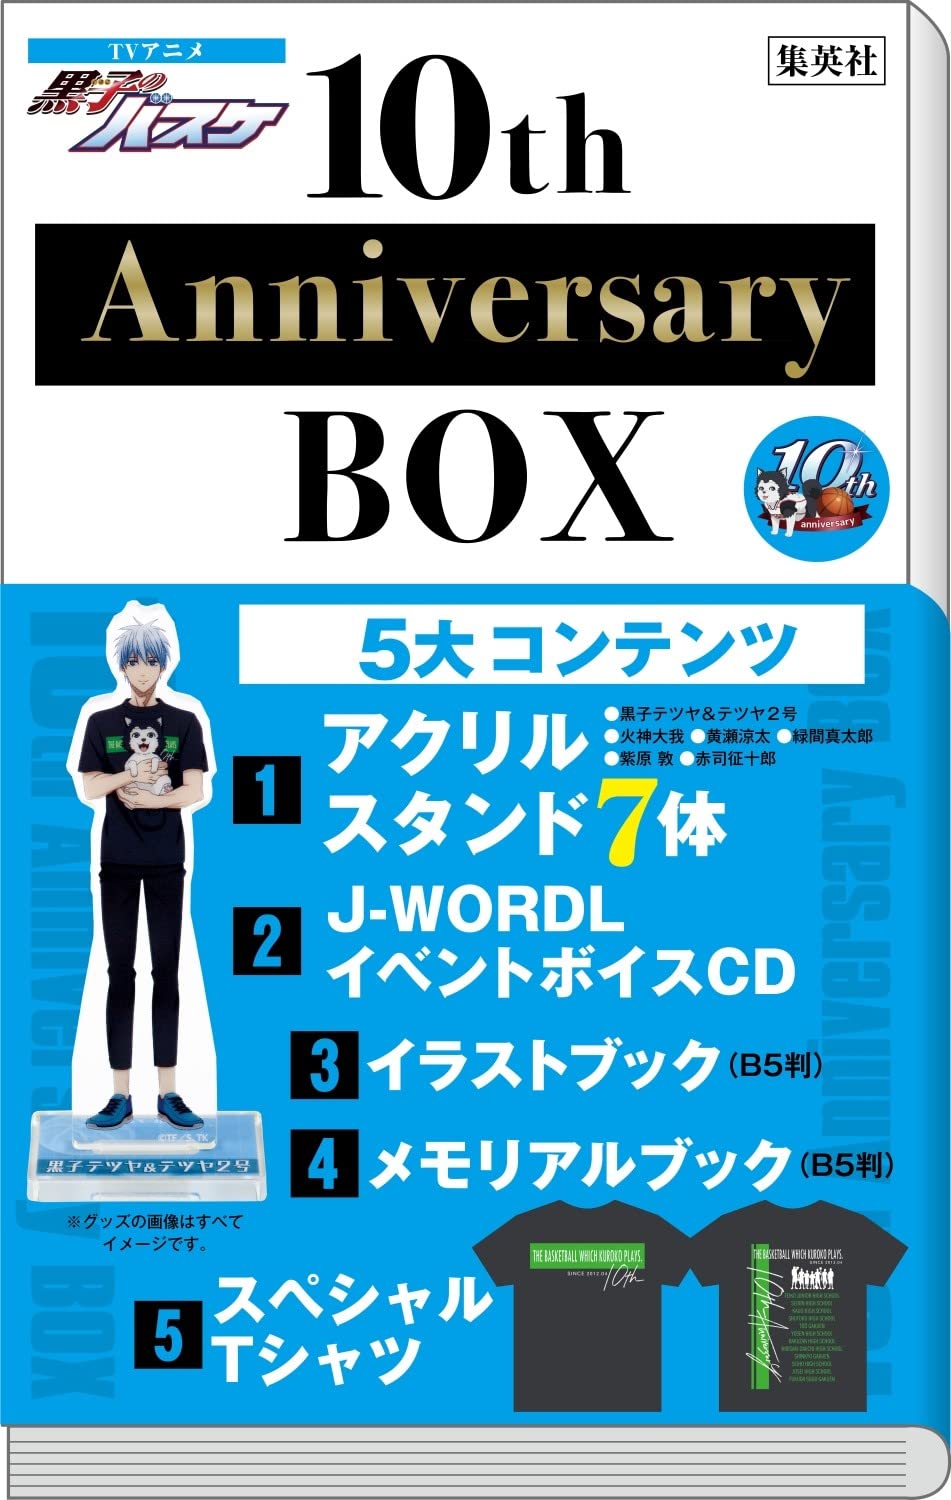 アニメ「黒子のバスケ」10周年を記念する豪華ボックス 8月4日発売!